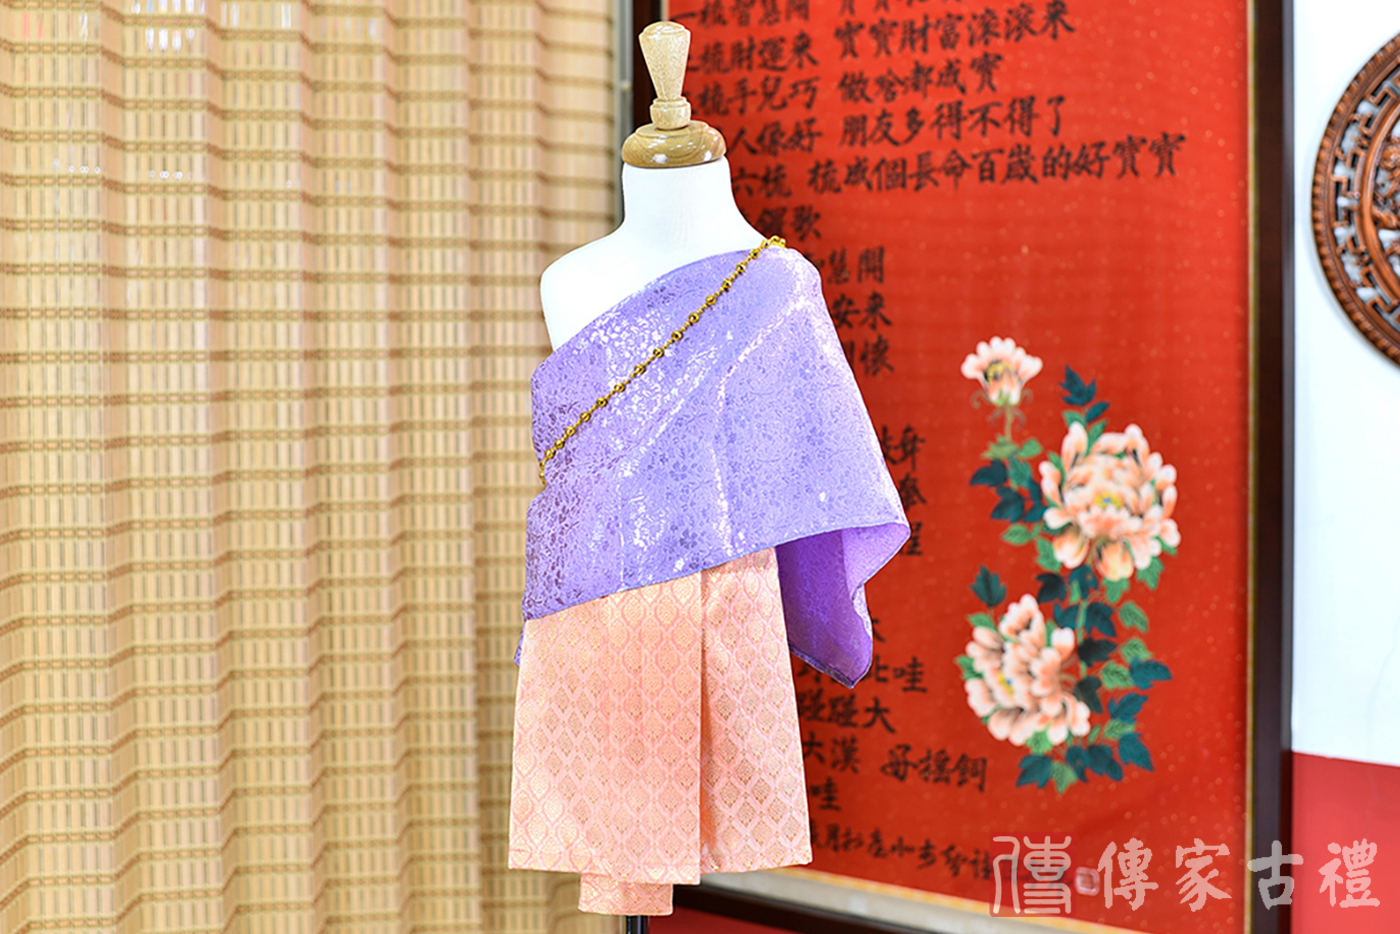 2024-02-22小孩皇室泰服古裝禮服。淺紫色的紋路披肩上衣搭配橘色方格圖案裙裝的泰式古裝禮服。照片集